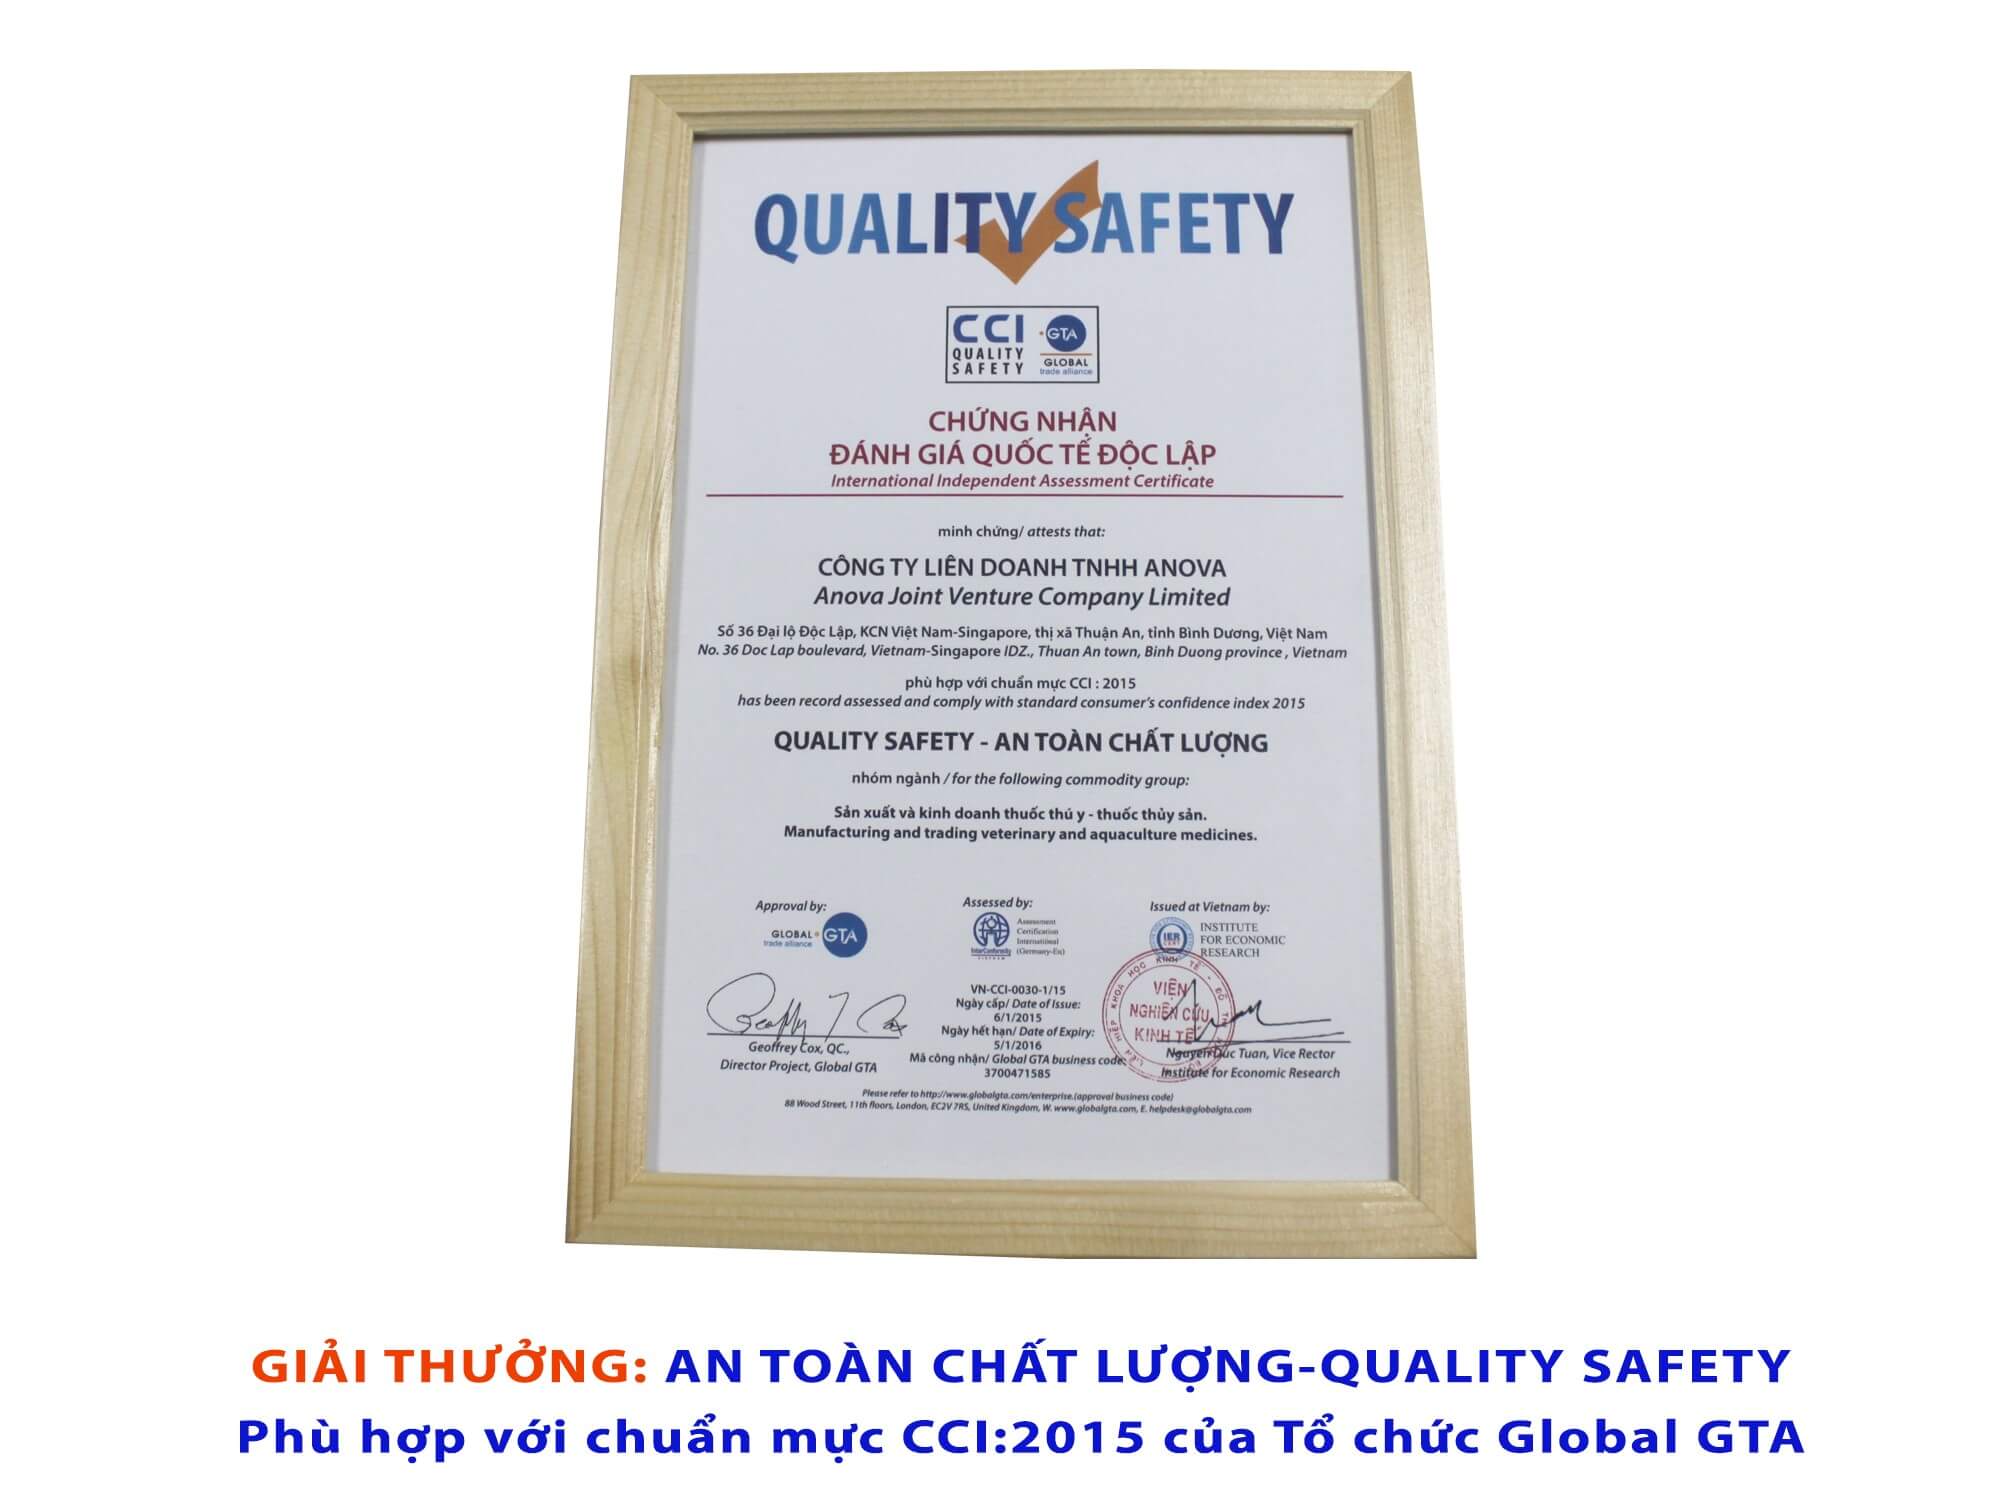 An toàn chất lượng – Quality Safety (Phù hợp với chuẩn mực CCI:2015) Do Viện Nghiên Cứu Kinh Tế & Tổ chức Global GTA